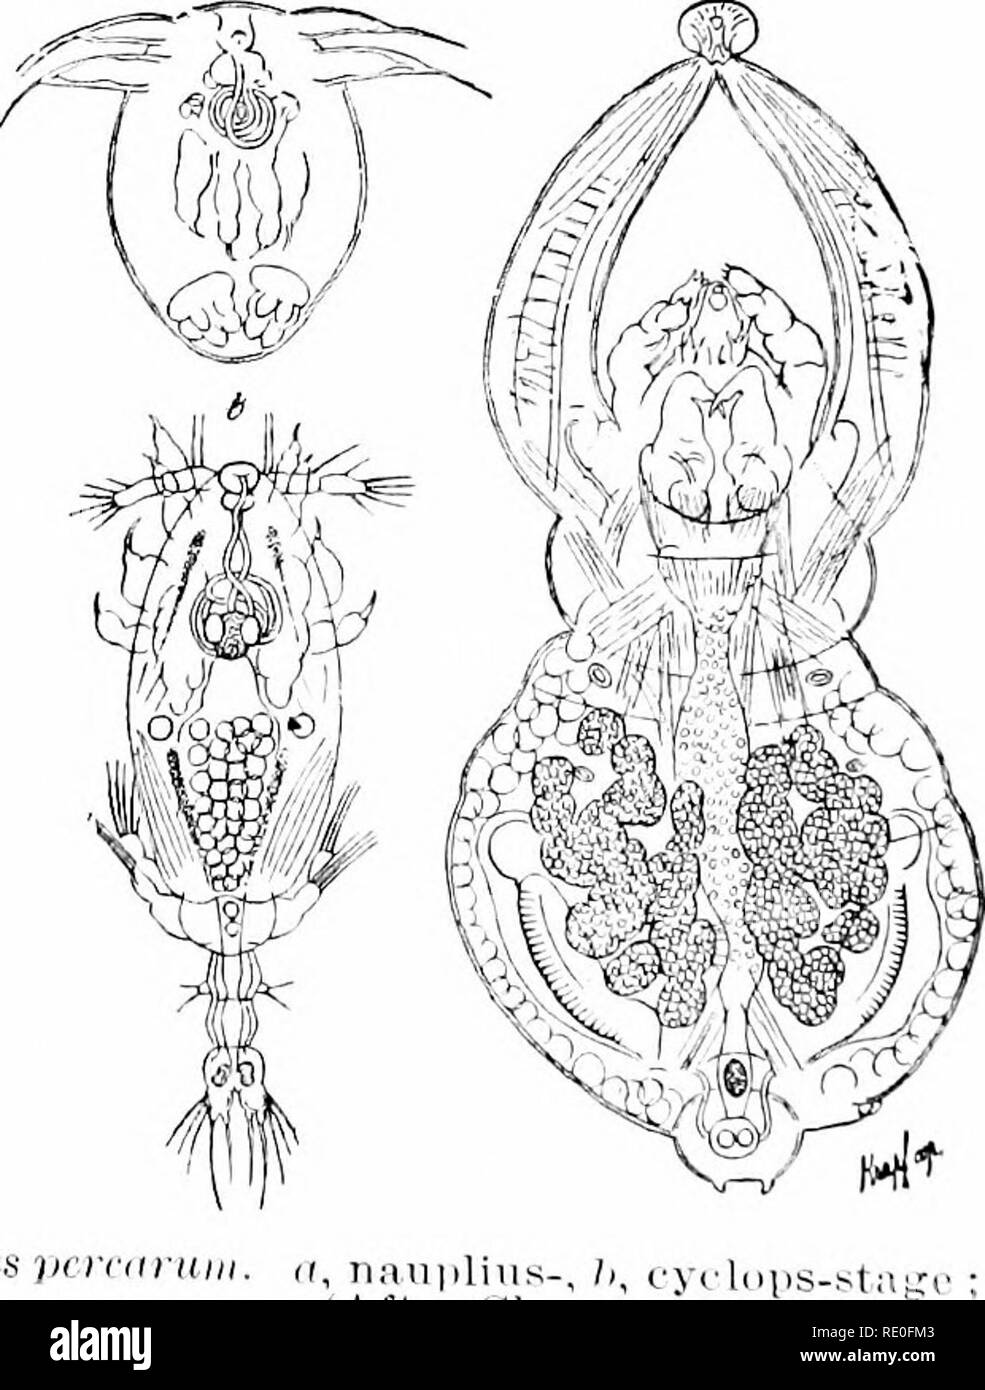 . Ein Handbuch der Zoologie. Zoologie. ViG. r^- jisci Sircdnn 2/o"-) Ni" (larvii von Arnhh/xtoma liuriniim). (Nach Dum^ ril und Bibroii.) unten im System; freuen Sie sich auf einen Schwanz und tuft - wie Kiemen, die im erwachsenen Frosch fehlen. (3) Es gibt bestimmte para-sitic Krebstiere, die auf die Kiemen der Fische leben, und scheinen nicht Abb. f&gt;.-AcWiercs pcmini. ir, Tiaiipliiis (. n ach C'Laus.) erwachsene Frau. wie ihre Angehörigen. Sie sind sliapeless Massen wliicli wurden früher als para, sitic^Worms betrachtet. Ihre systematische Stellung war nur bestimmt. l) y die Embryologie (Abb. 0). Hier ist es. Stockfoto